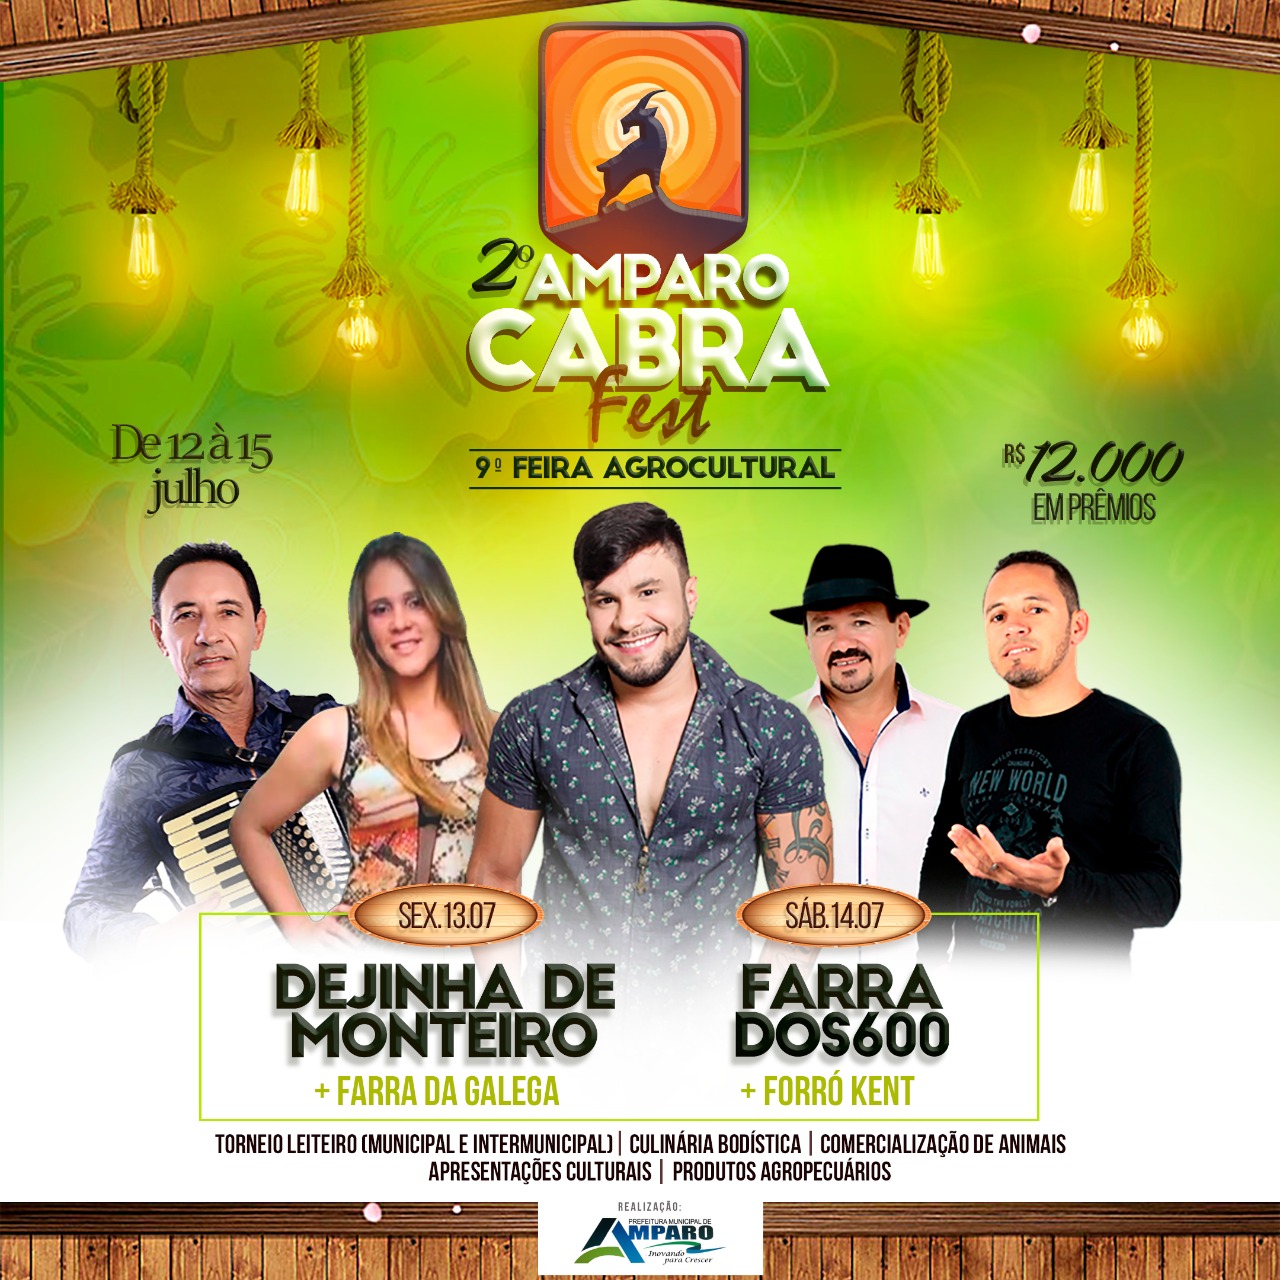 Forró Kent e Farra dos 600 são atrações deste sábado da 2ª edição do Amparo Cabra Fest